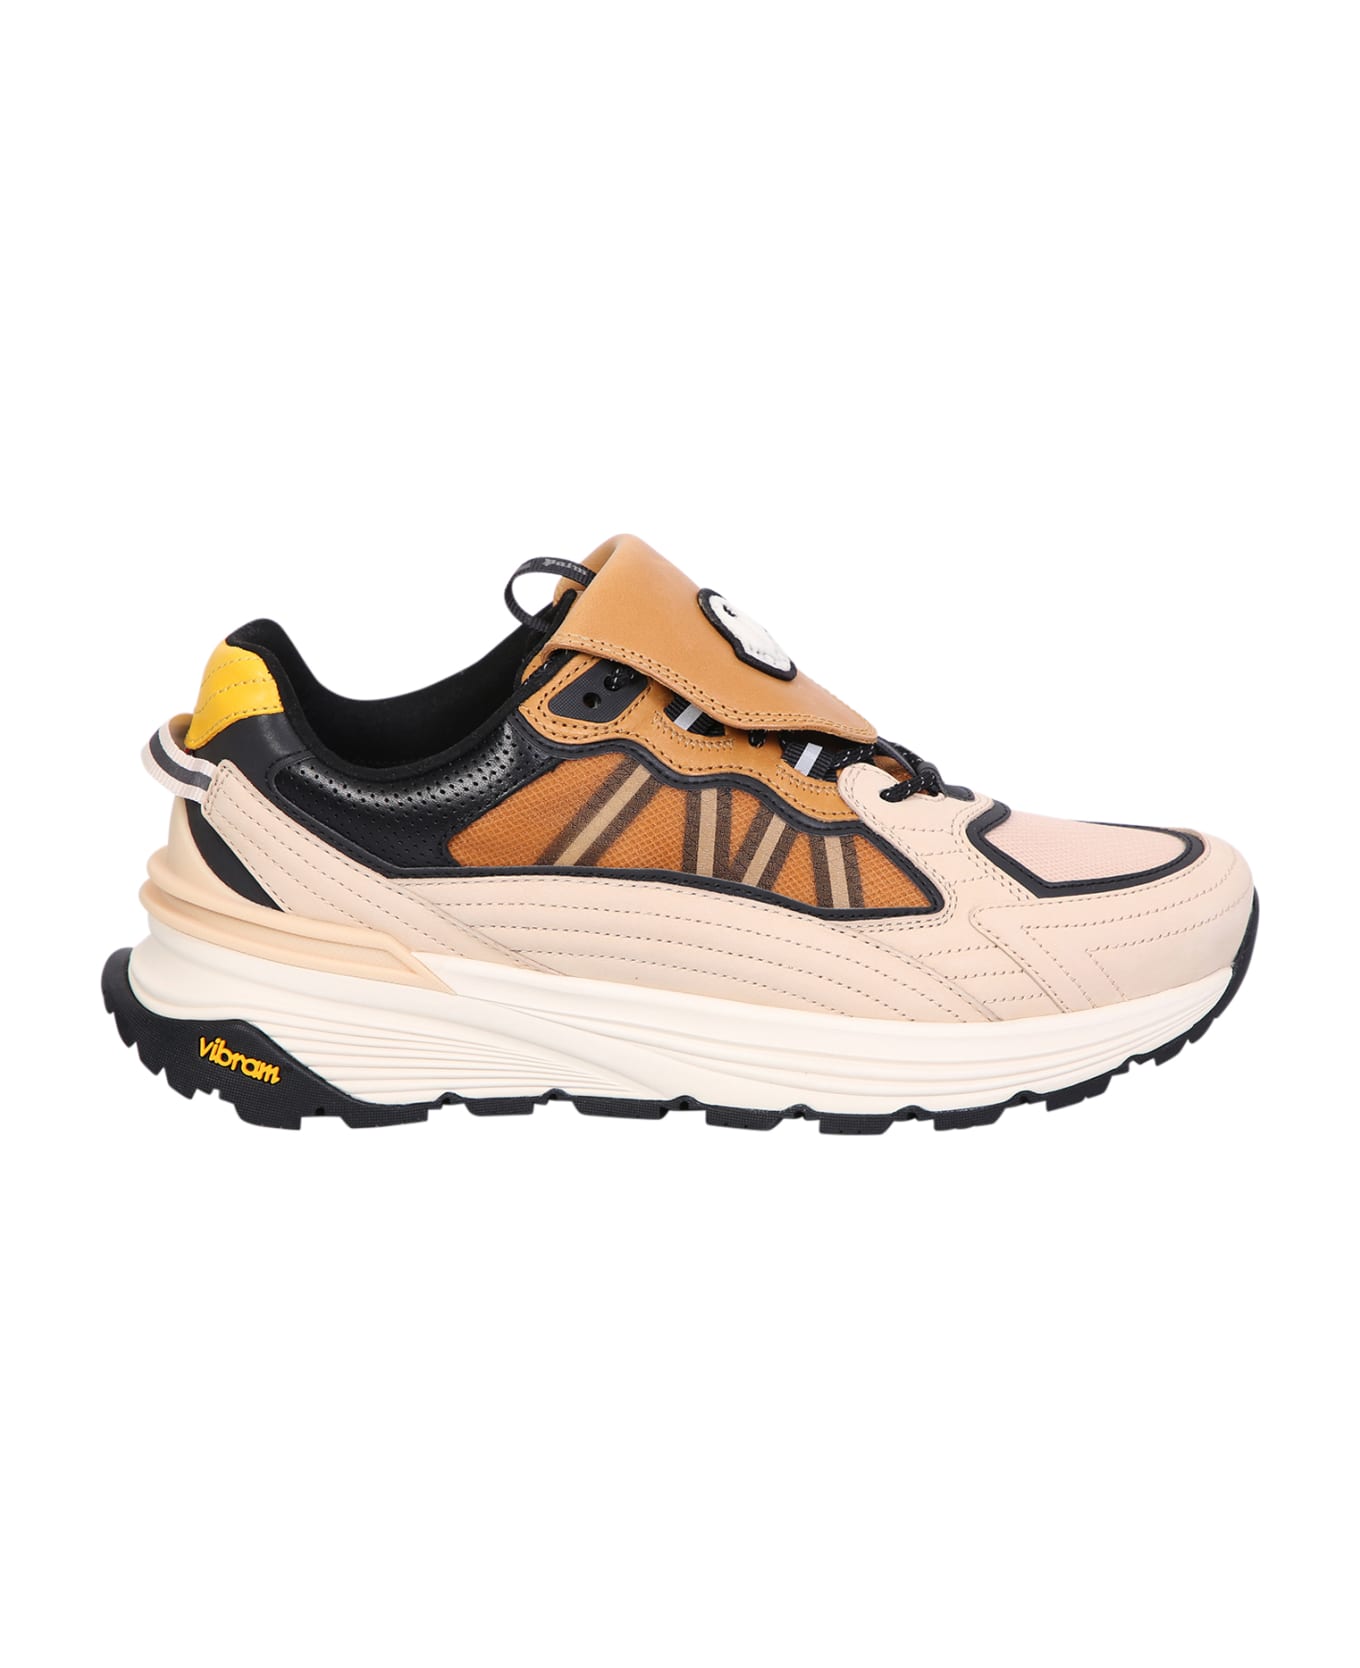 Moncler Genius Palm Lite Runner Sneakers - Beige スニーカー